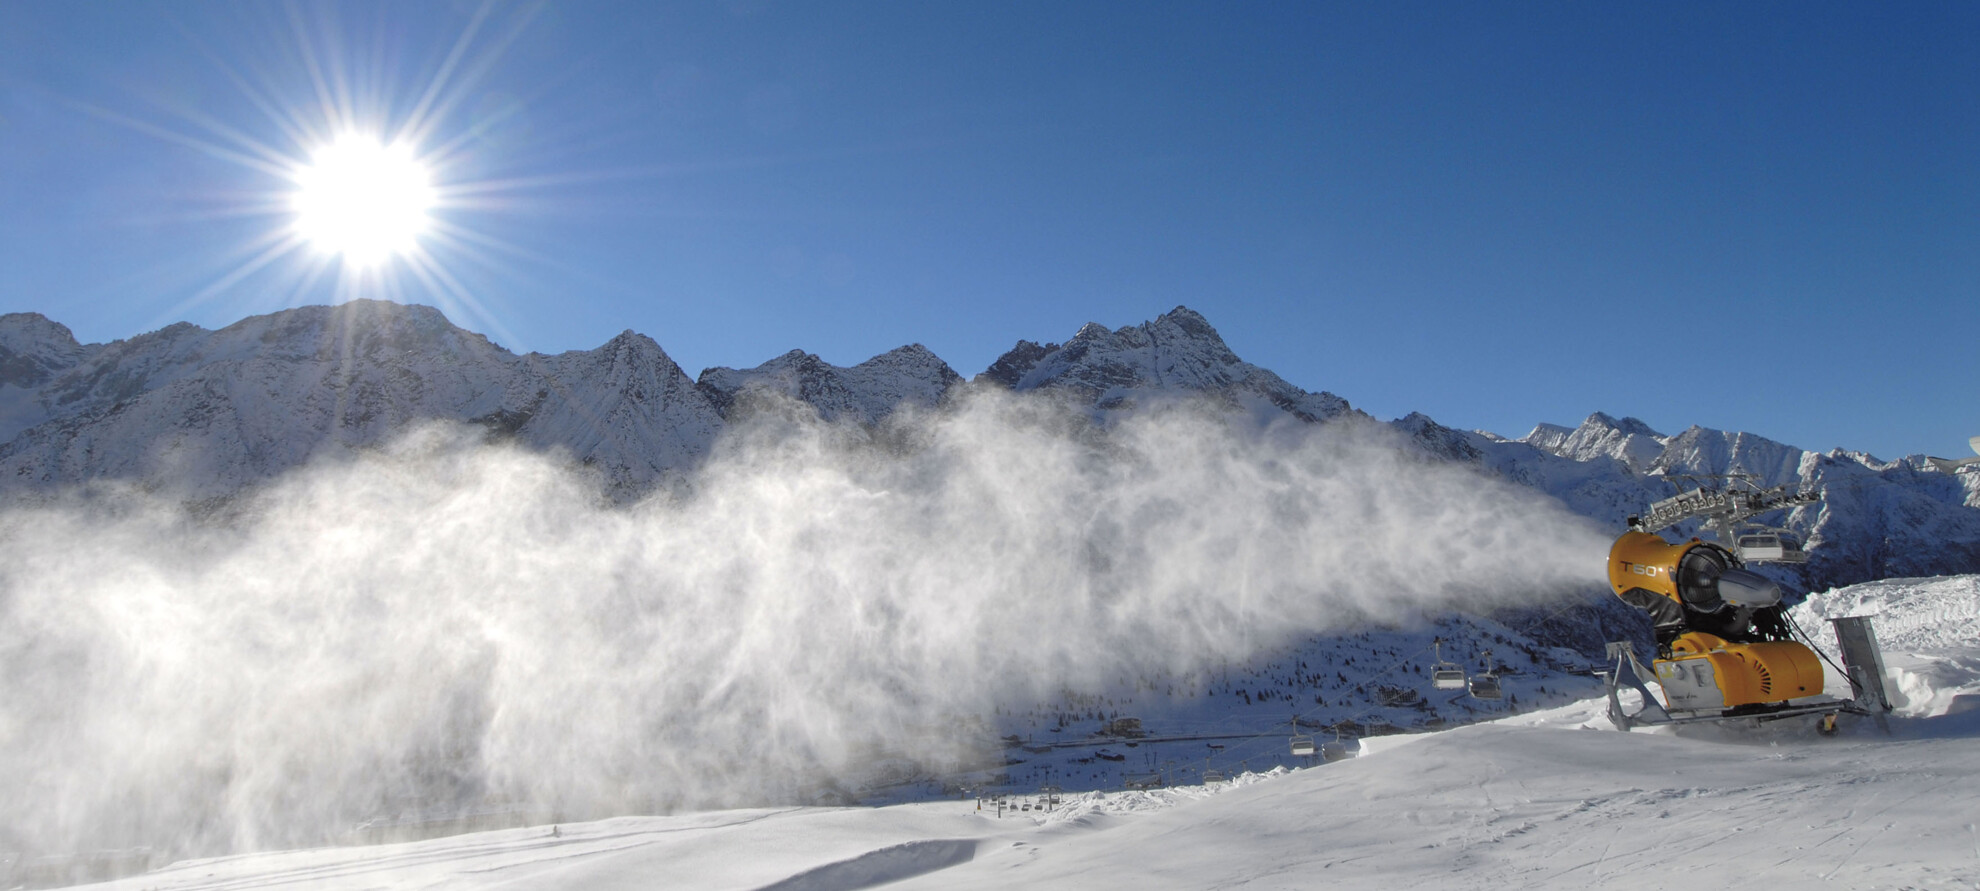 Passo del Tonale - Panorama con cannone da neve - photo Daniele Lira